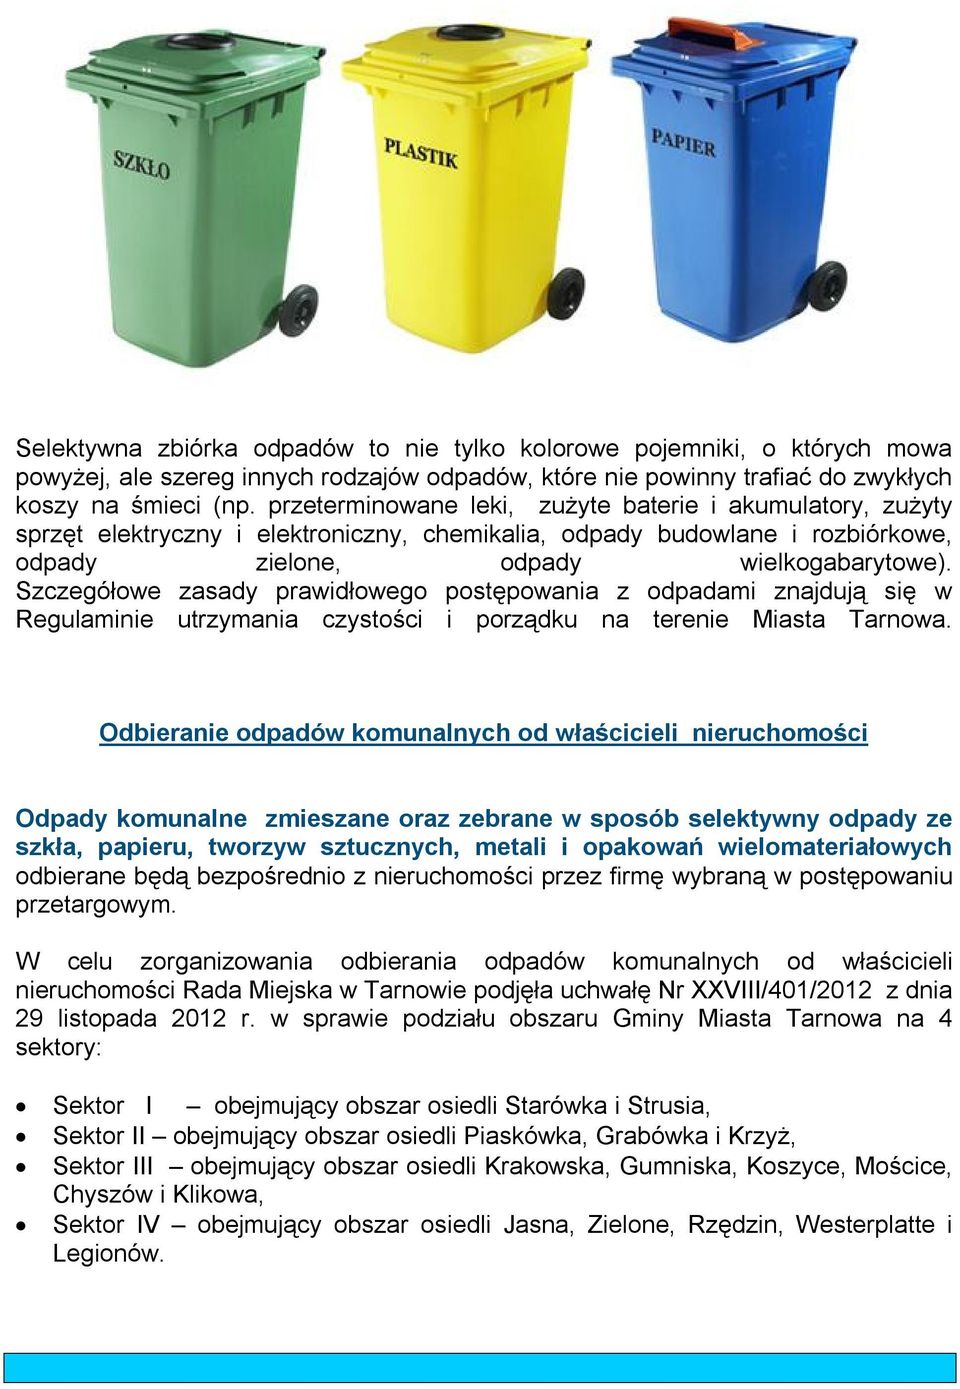 Szczegółowe zasady prawidłowego postępowania z odpadami znajdują się w Regulaminie utrzymania czystości i porządku na terenie Miasta Tarnowa.